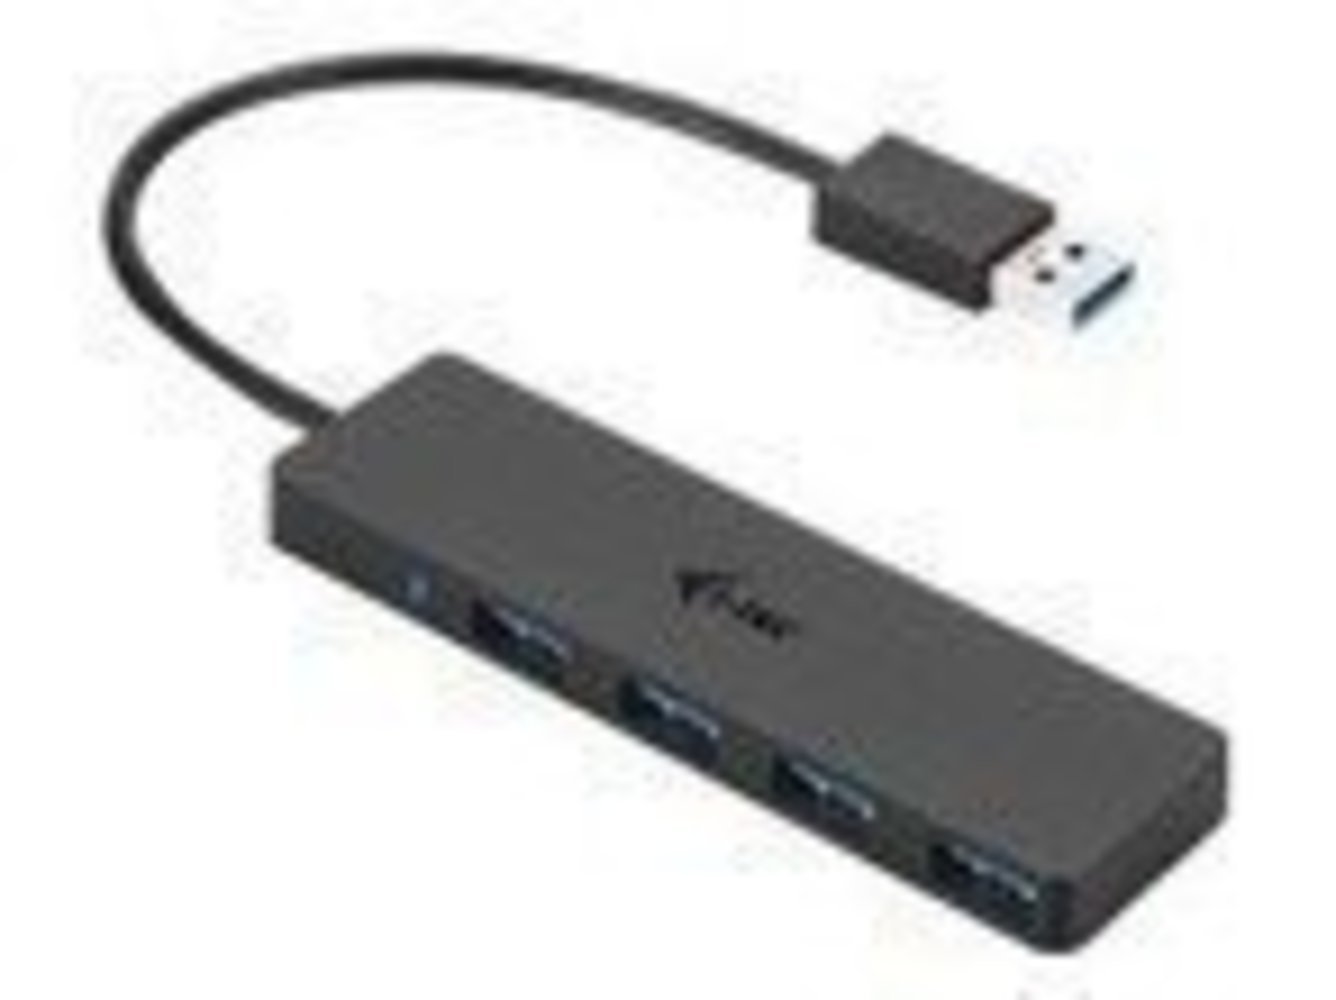 ITEC I-TEC USB 3.0 Slim Passive HUB 4 Port ohne Netzteil ideal fuer Notebook Ultrabook Tablet PC Unterstuetzt Win und Mac OS Schwarz